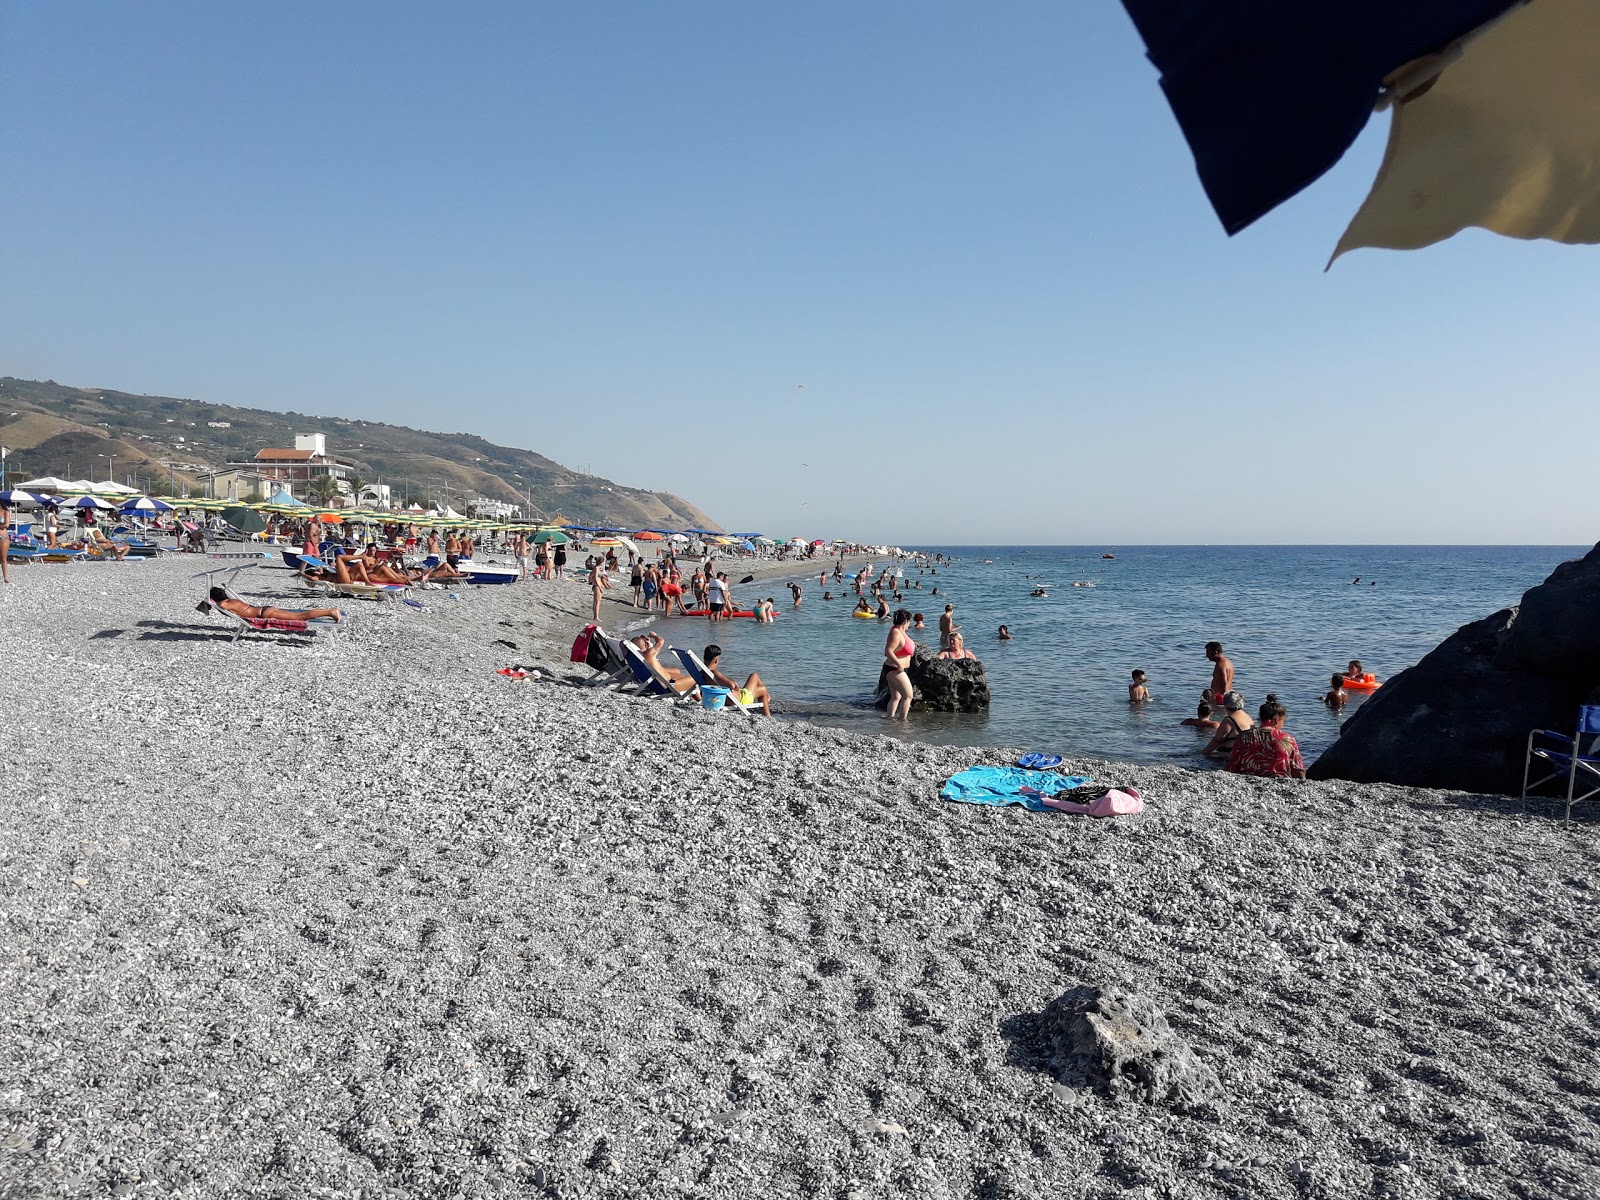 Foto av Spiaggia Amantea med lång rak strand